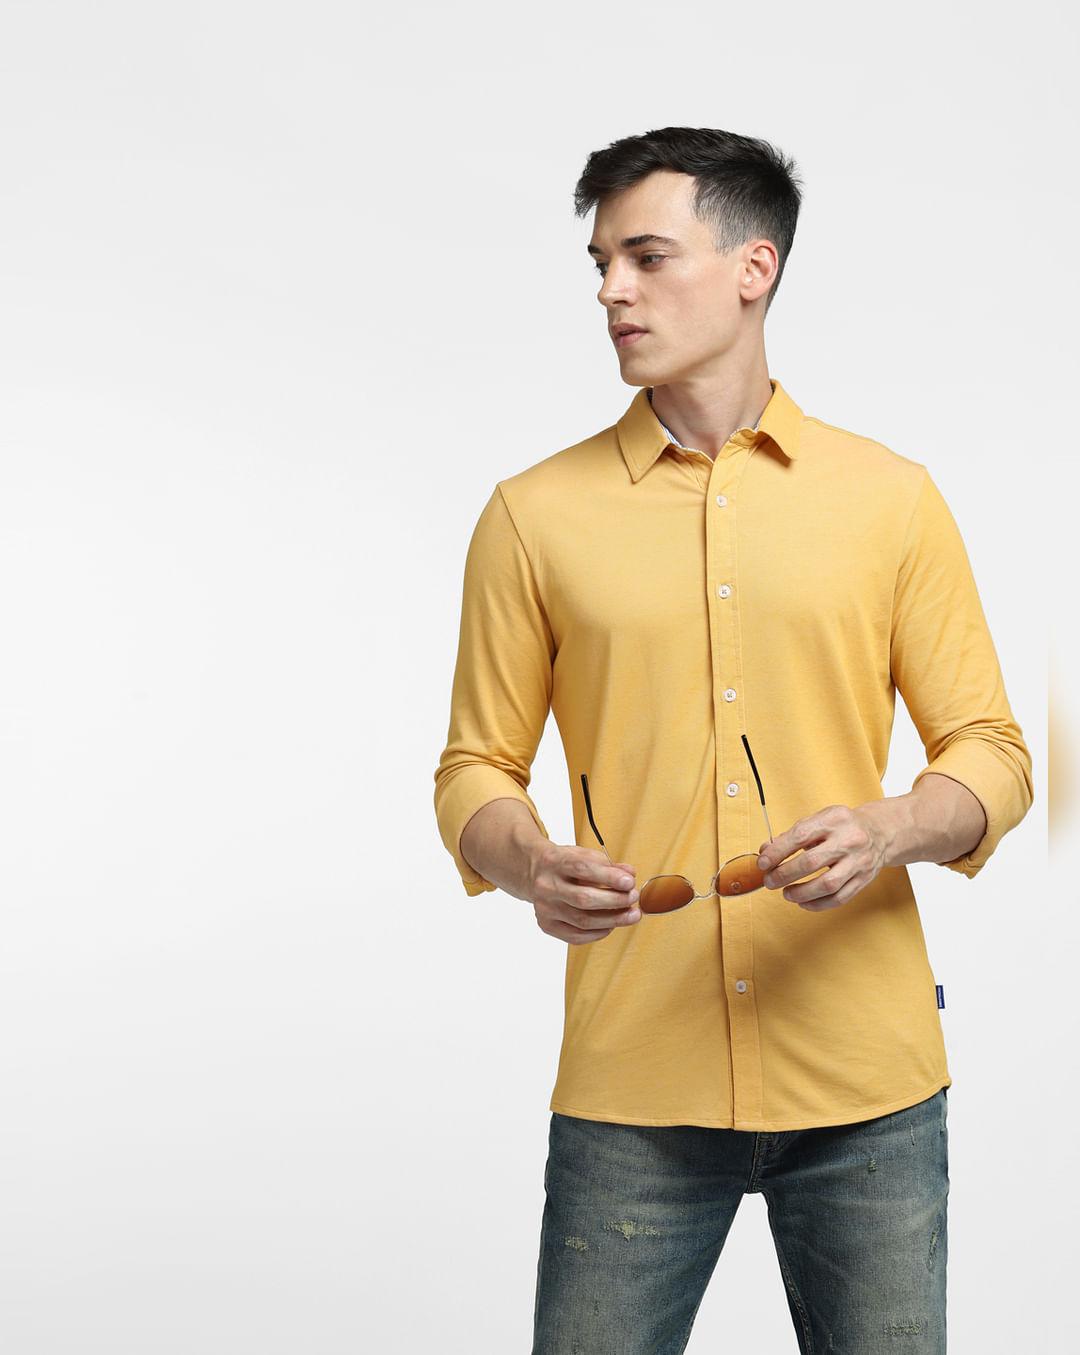 yellow-full-sleeves-shirt